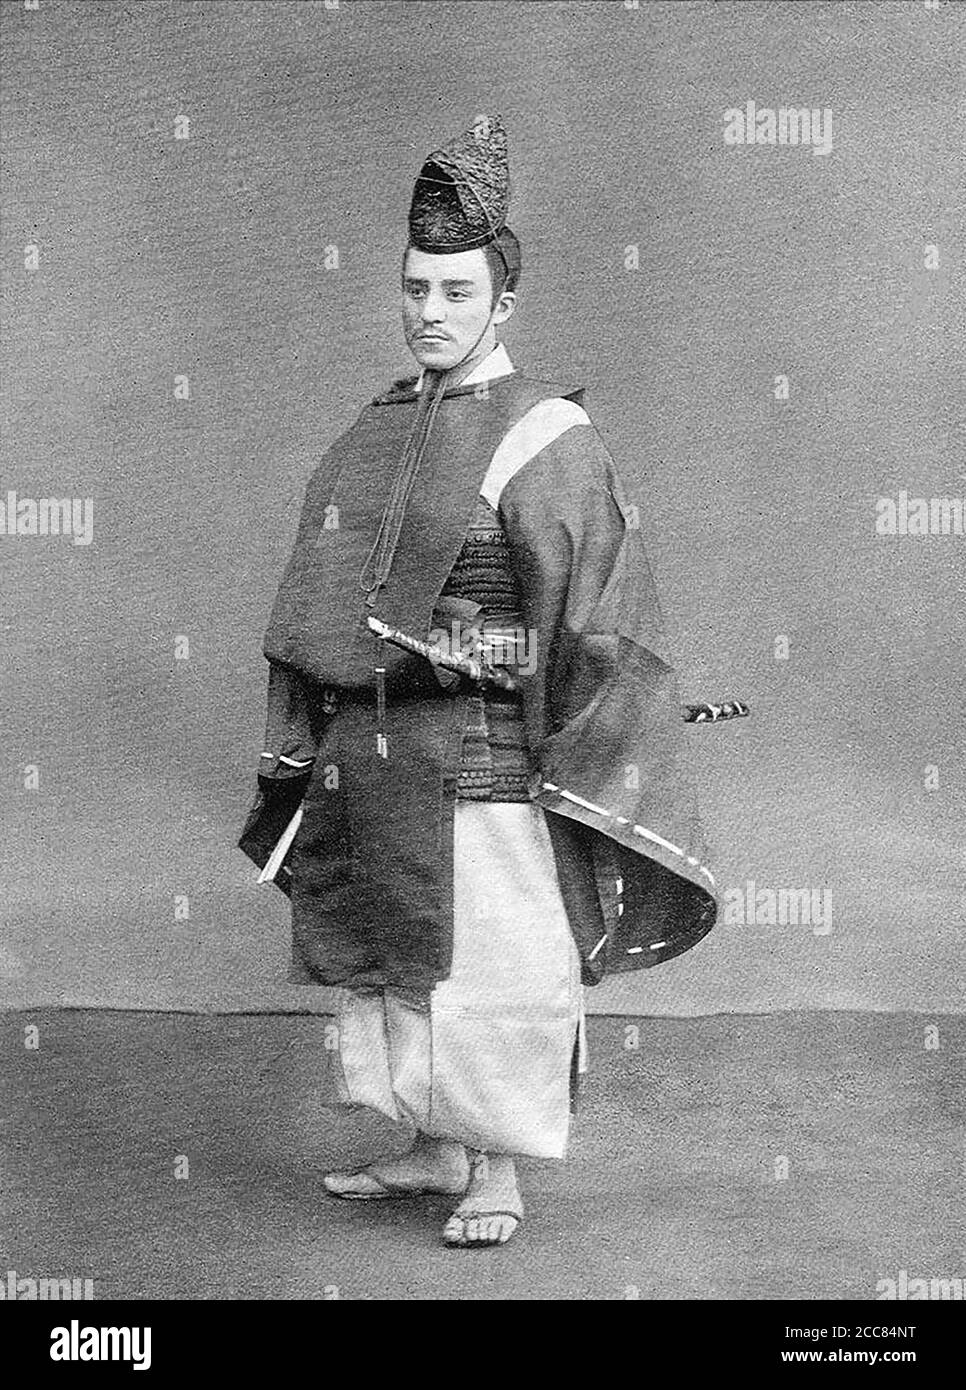 Japan: 'Einer der Leibwächter'. Chemigraph aus der Serie 'Military Costumes in Old Japan' von Kazumasa Ogawa (1860-1929), 1893, Tokio. Ogawa Kazumasa, auch bekannt als Ogawa Kazuma oder Ogawa Isshin, war ein japanischer Fotograf, Chemigraph, Drucker und Verleger der Meiji-Ära. Er war ein Pionier im photomechanischen Druck und der Fotografie und wurde in den Samurai-Clan von Matsudaira geboren, wo er im Alter von 15 Jahren Englisch und Fotografie studierte. Stockfoto